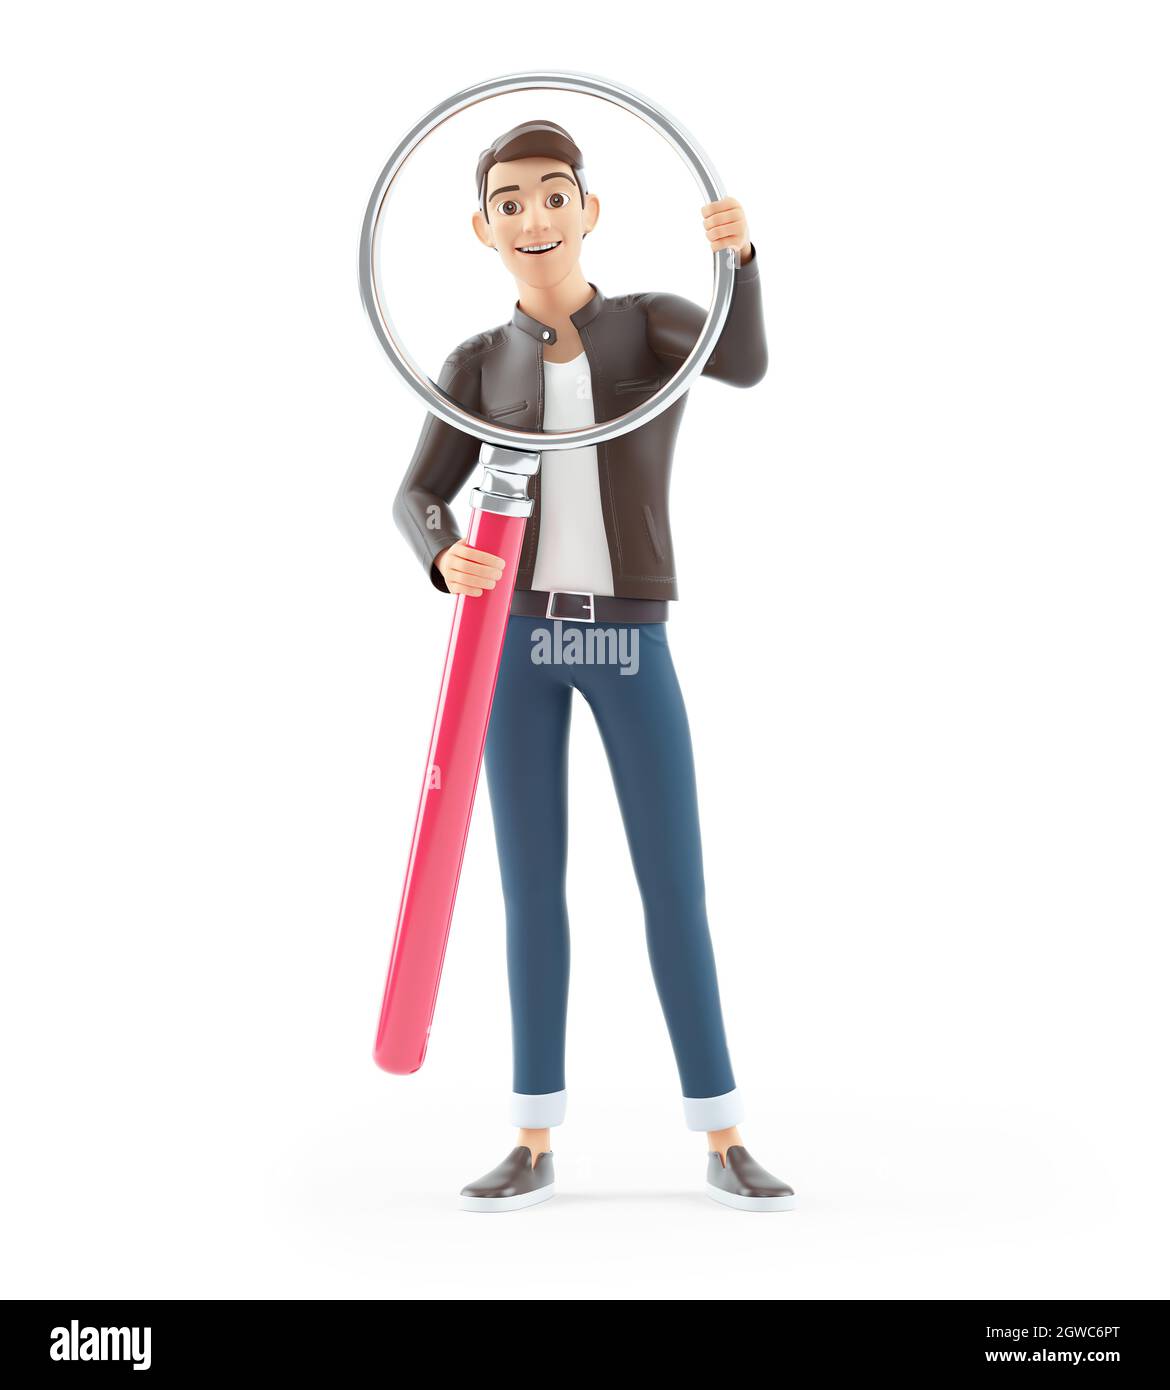 homme de dessin animé 3d tenant une grande loupe, illustration isolée sur fond blanc Banque D'Images